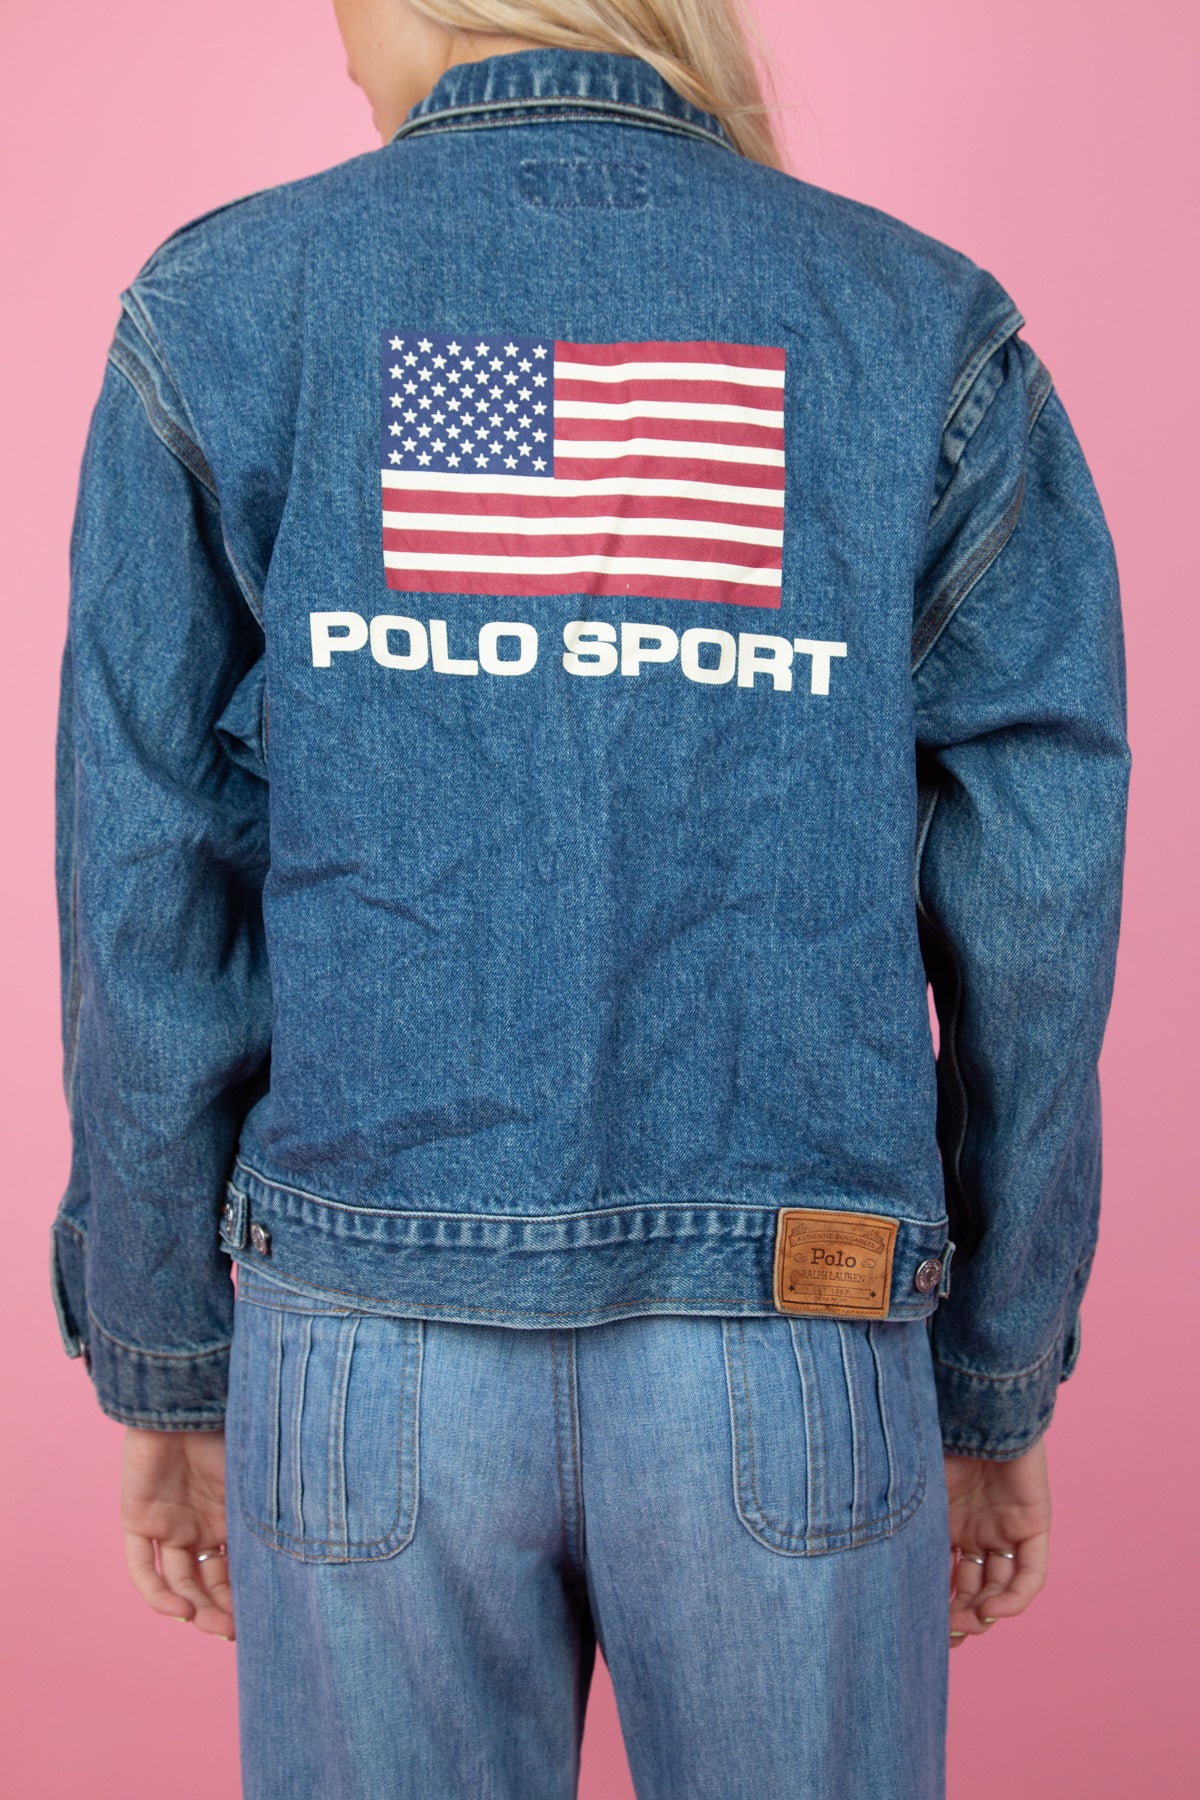 polo sport denim jacket